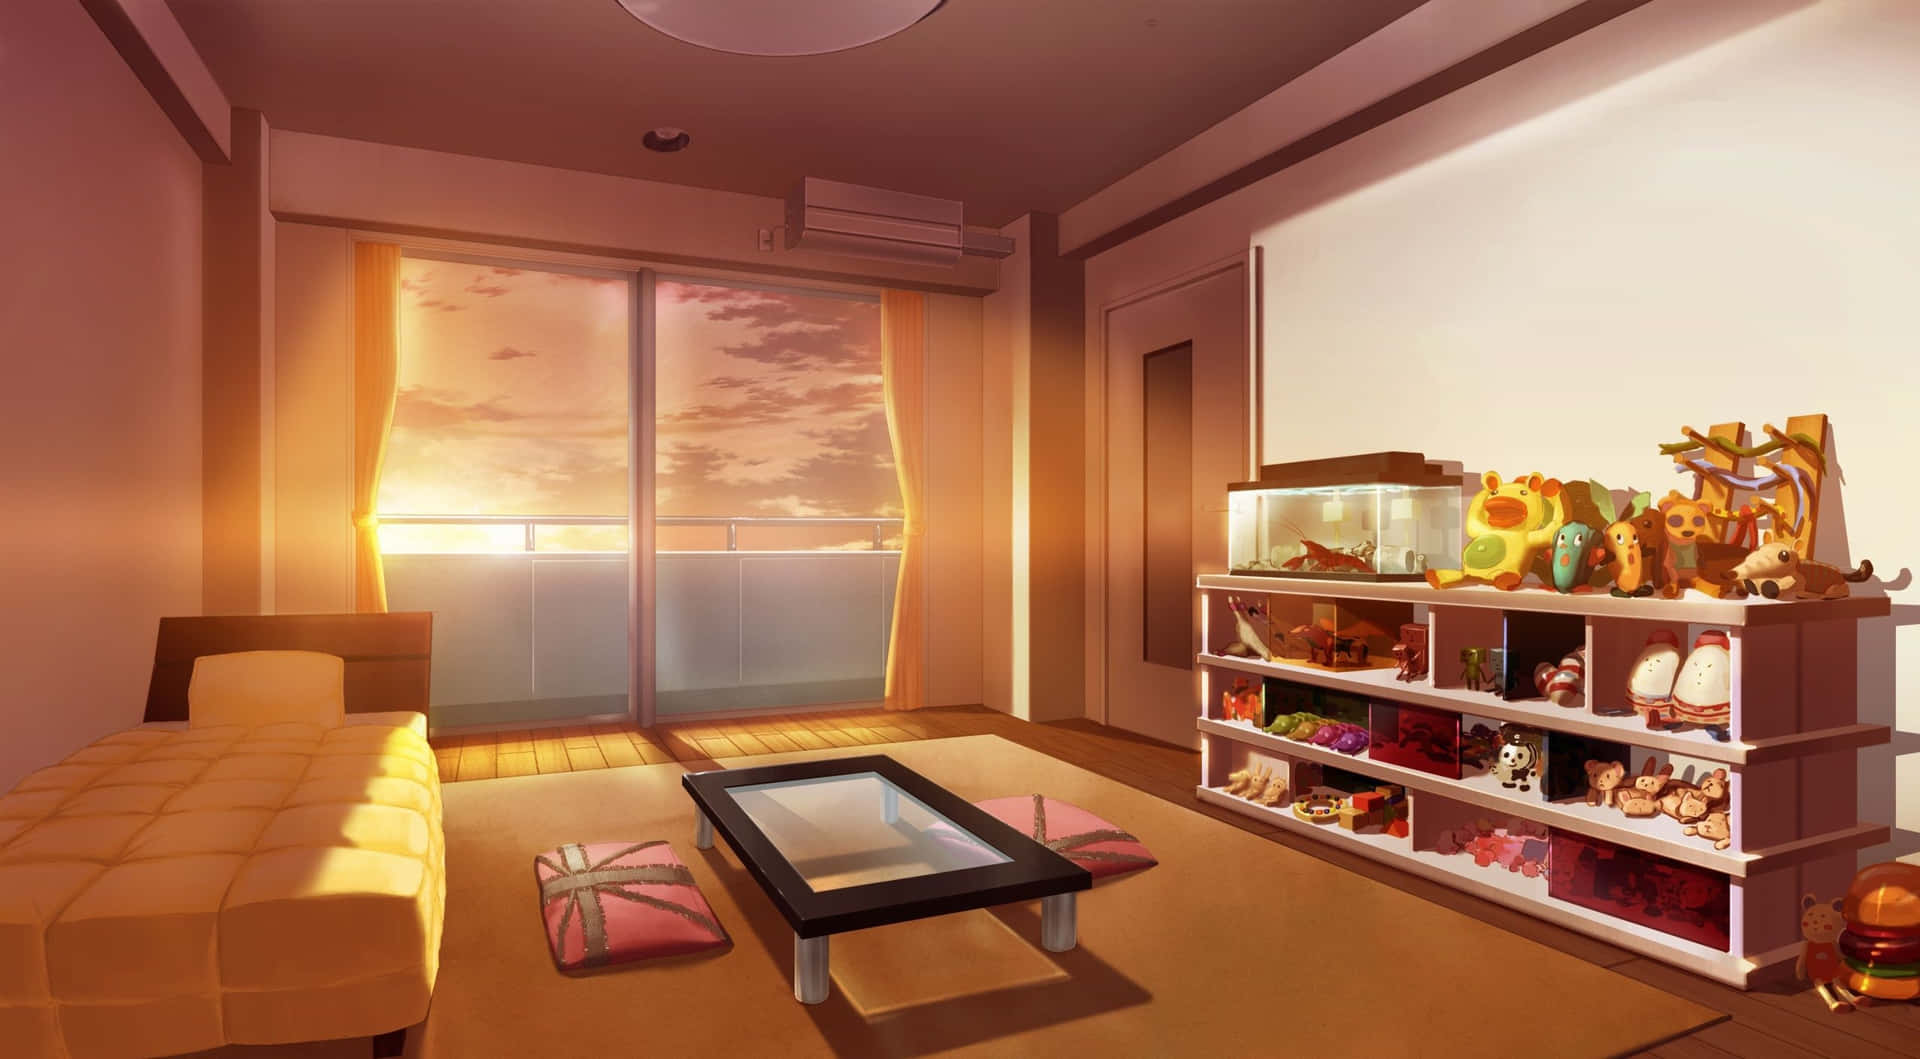 Hình nền phòng ngủ hoạt hình dễ thương (Cute anime bedroom wallpaper): Hình nền hoạt hình dễ thương là một cách tuyệt vời để trang trí phòng ngủ của bạn với những hình ảnh đáng yêu và hài hước. Bạn sẽ cảm thấy rất vui mừng khi nhìn thấy những nhân vật hoạt hình yêu thích của mình trong chính không gian của mình. Hãy để hình nền đáng yêu này mang đến cho bạn một môi trường sống tuyệt vời và thoải mái.